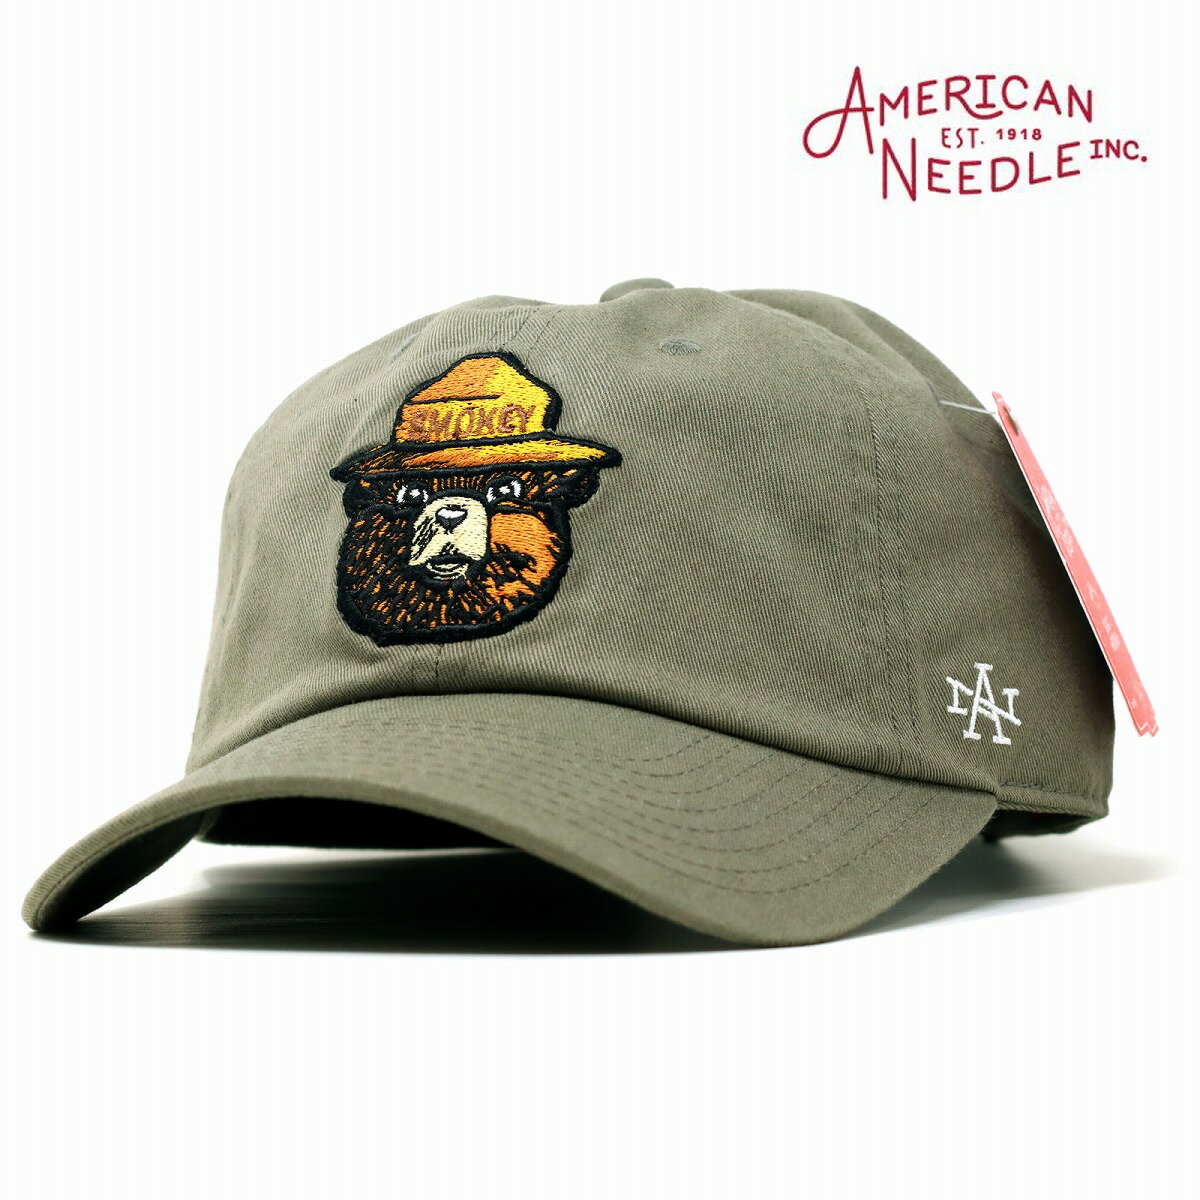 アメリカンニードル キャップ スモーキー・ベア メンズ レディース ブランド American Needle Smokey Bear BALLPARK クマ 帽子 綿100% / モス 父の日 プレゼント ギフト包装無料 [ baseball cap ]